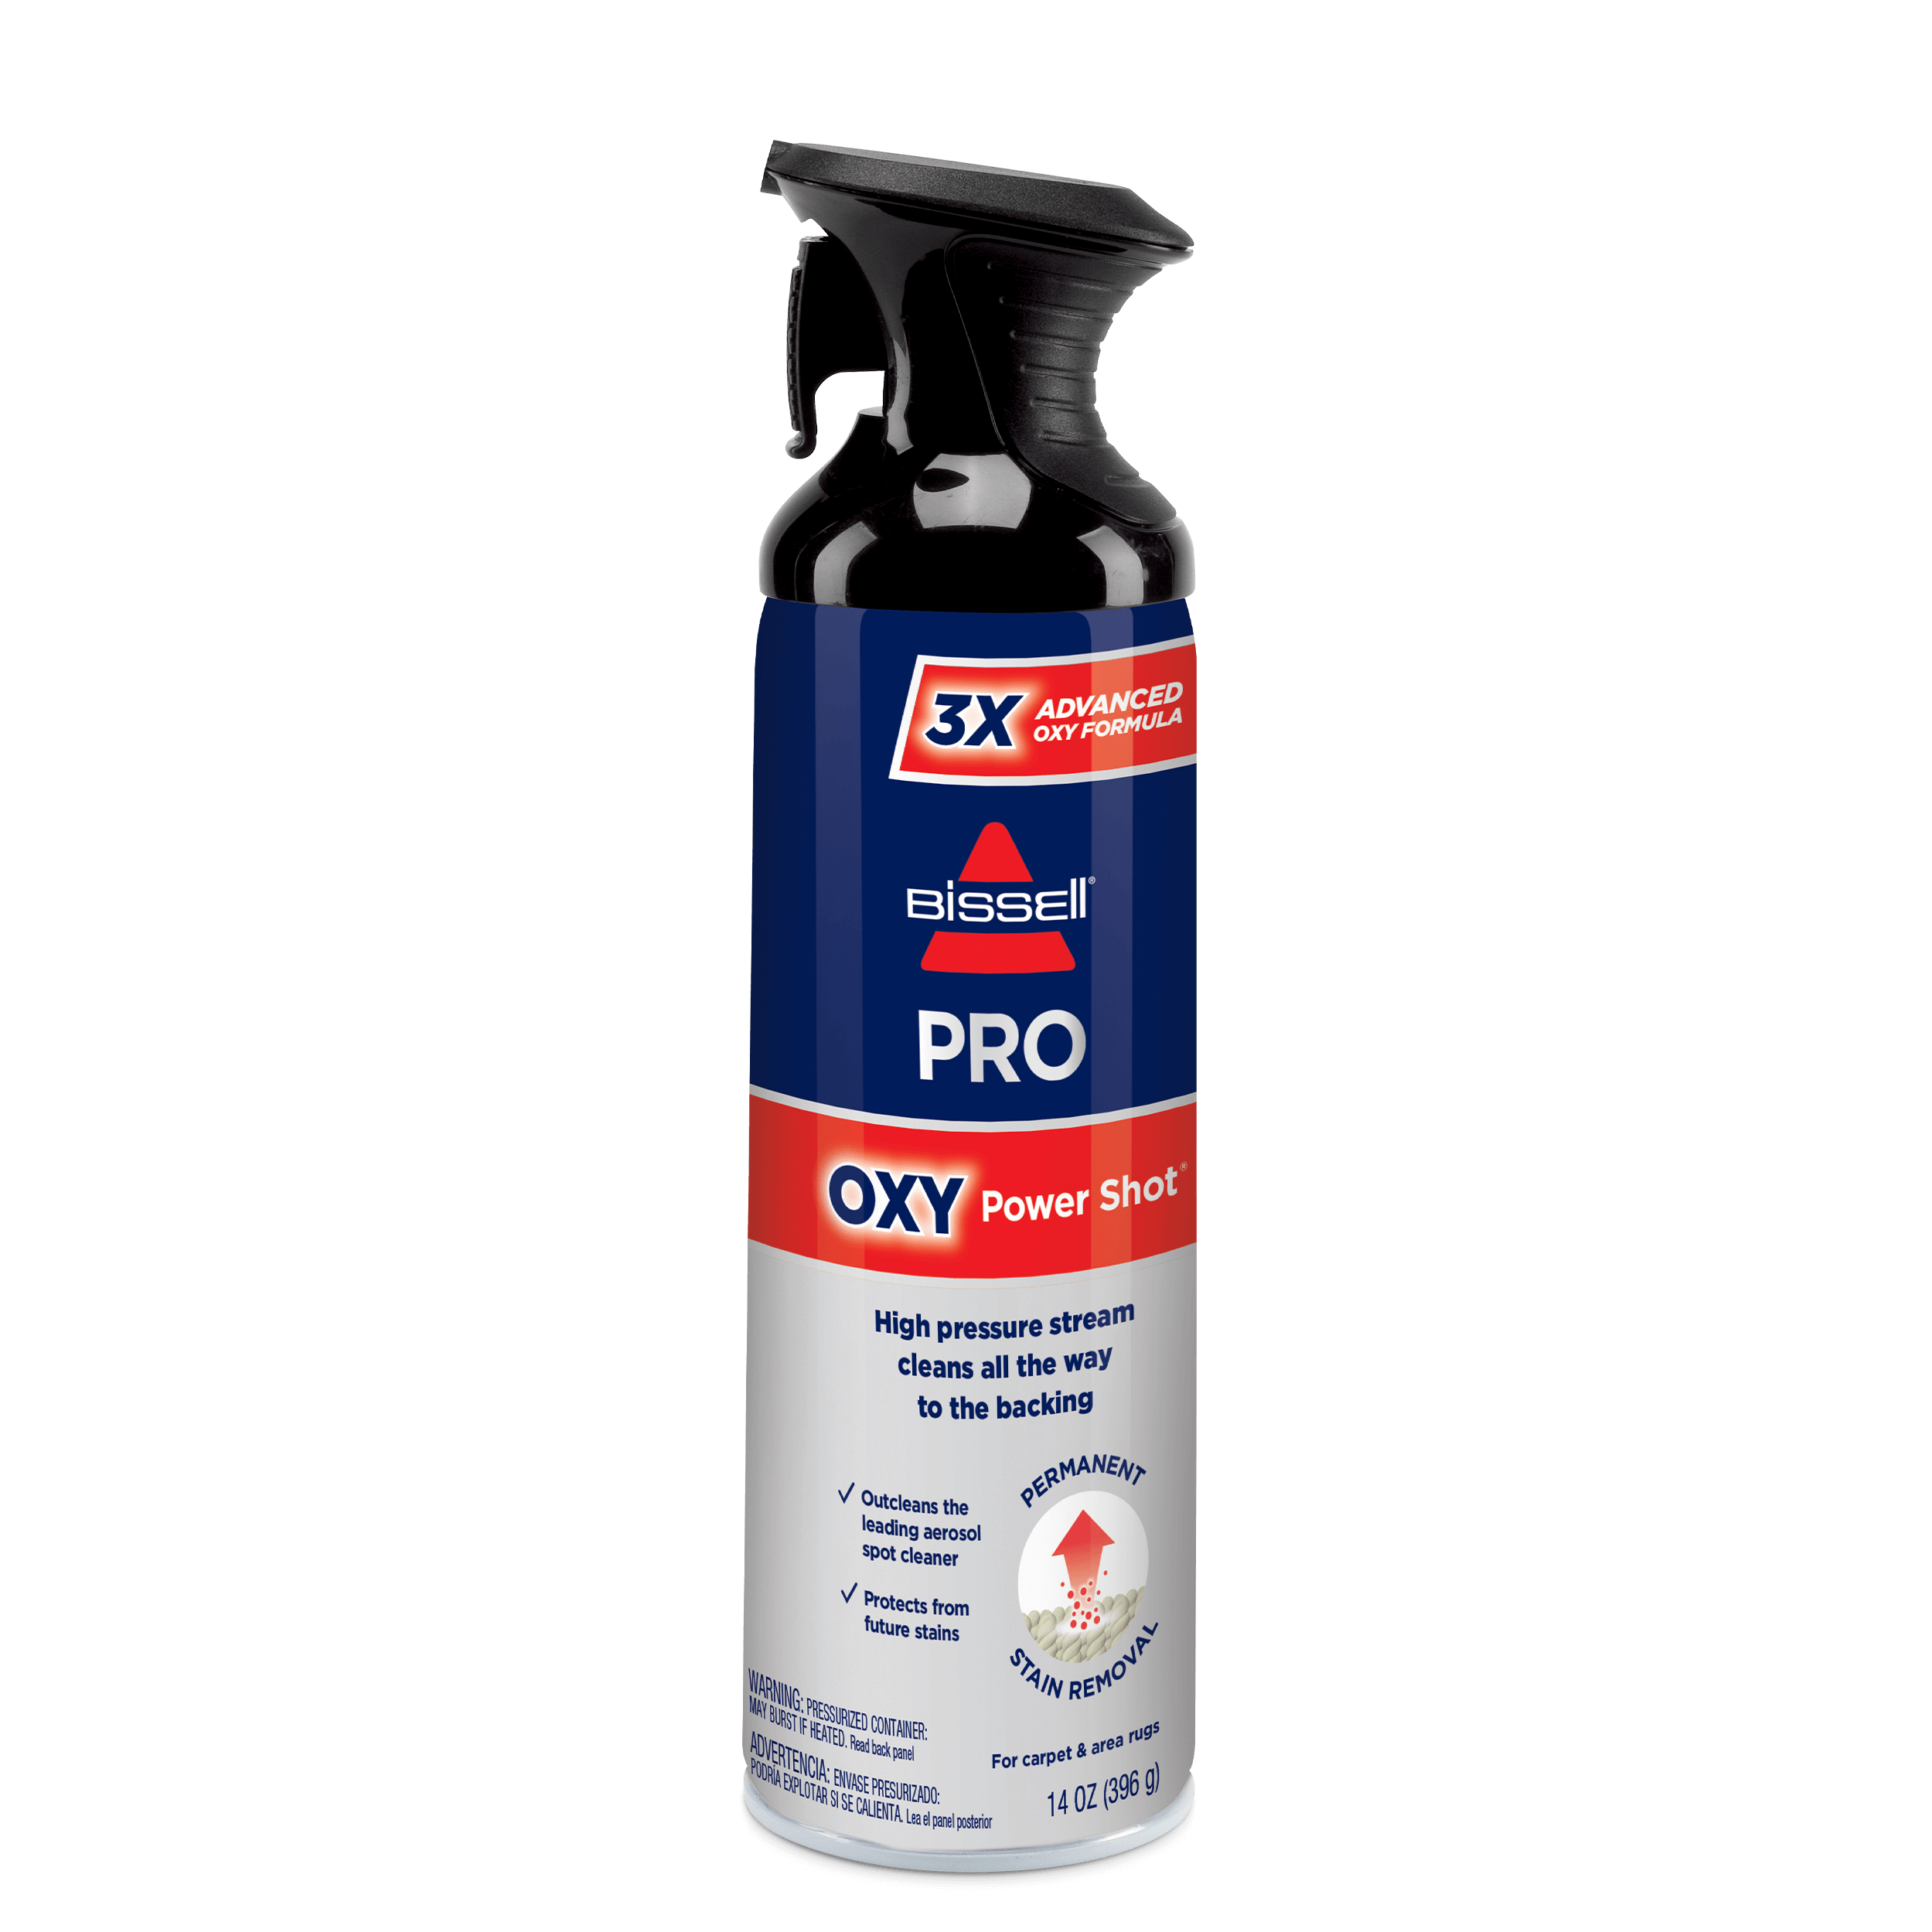 Fabric Sanitiser Spray Aerosol Guide: Benefit, Principle, Ingredient, Brand